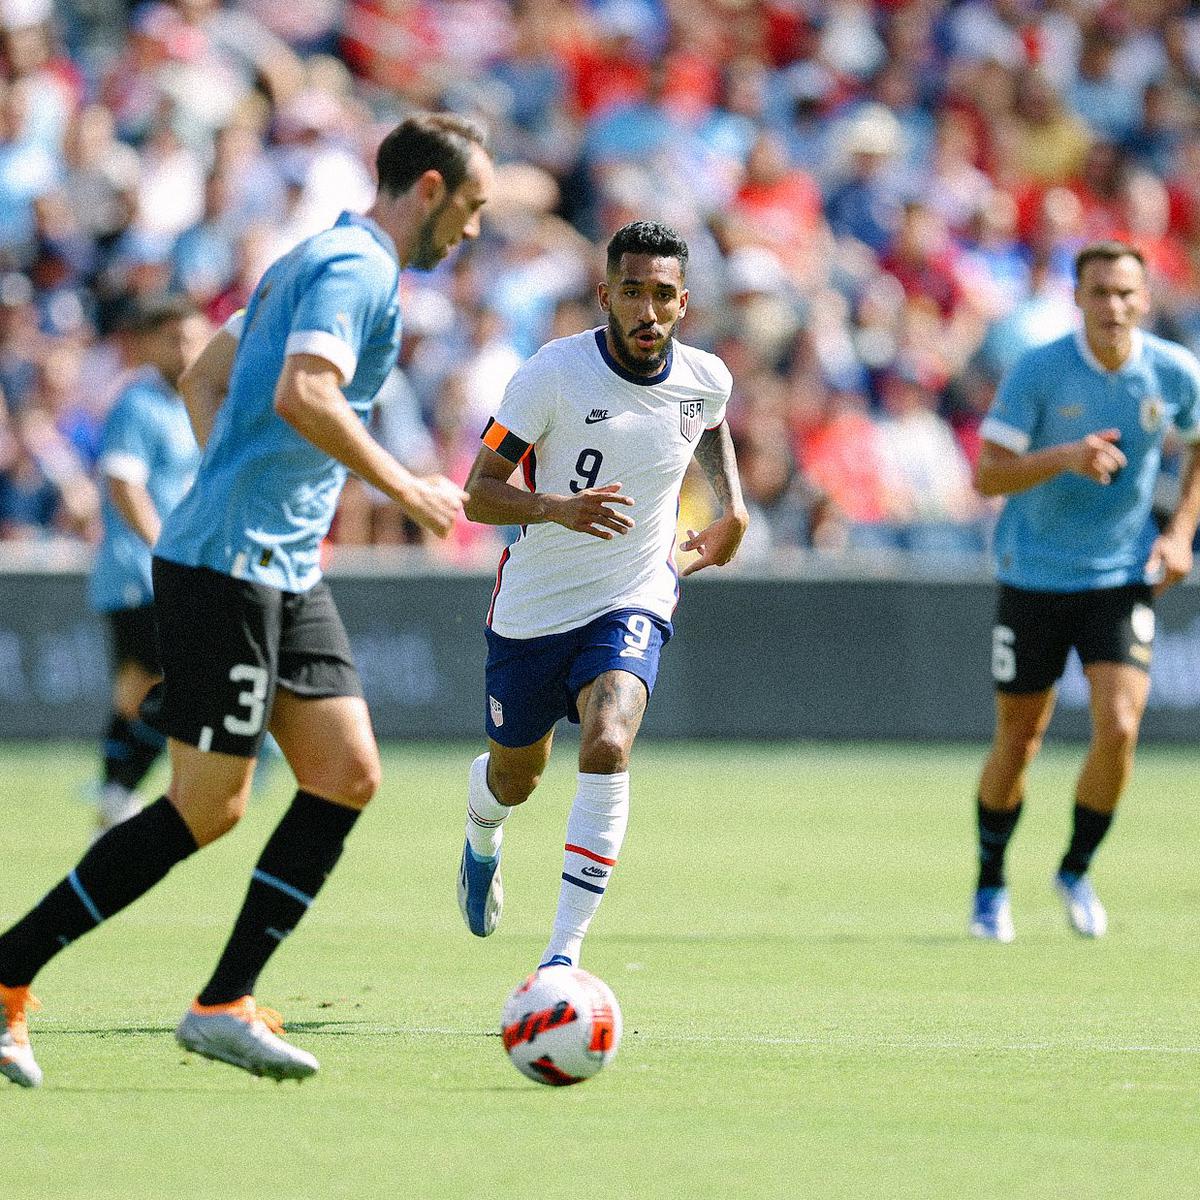 Estados Unidos vs. Uruguay, resultado y resumen: el USMNT rescata un empate  contra la fuerte selección sudamericana